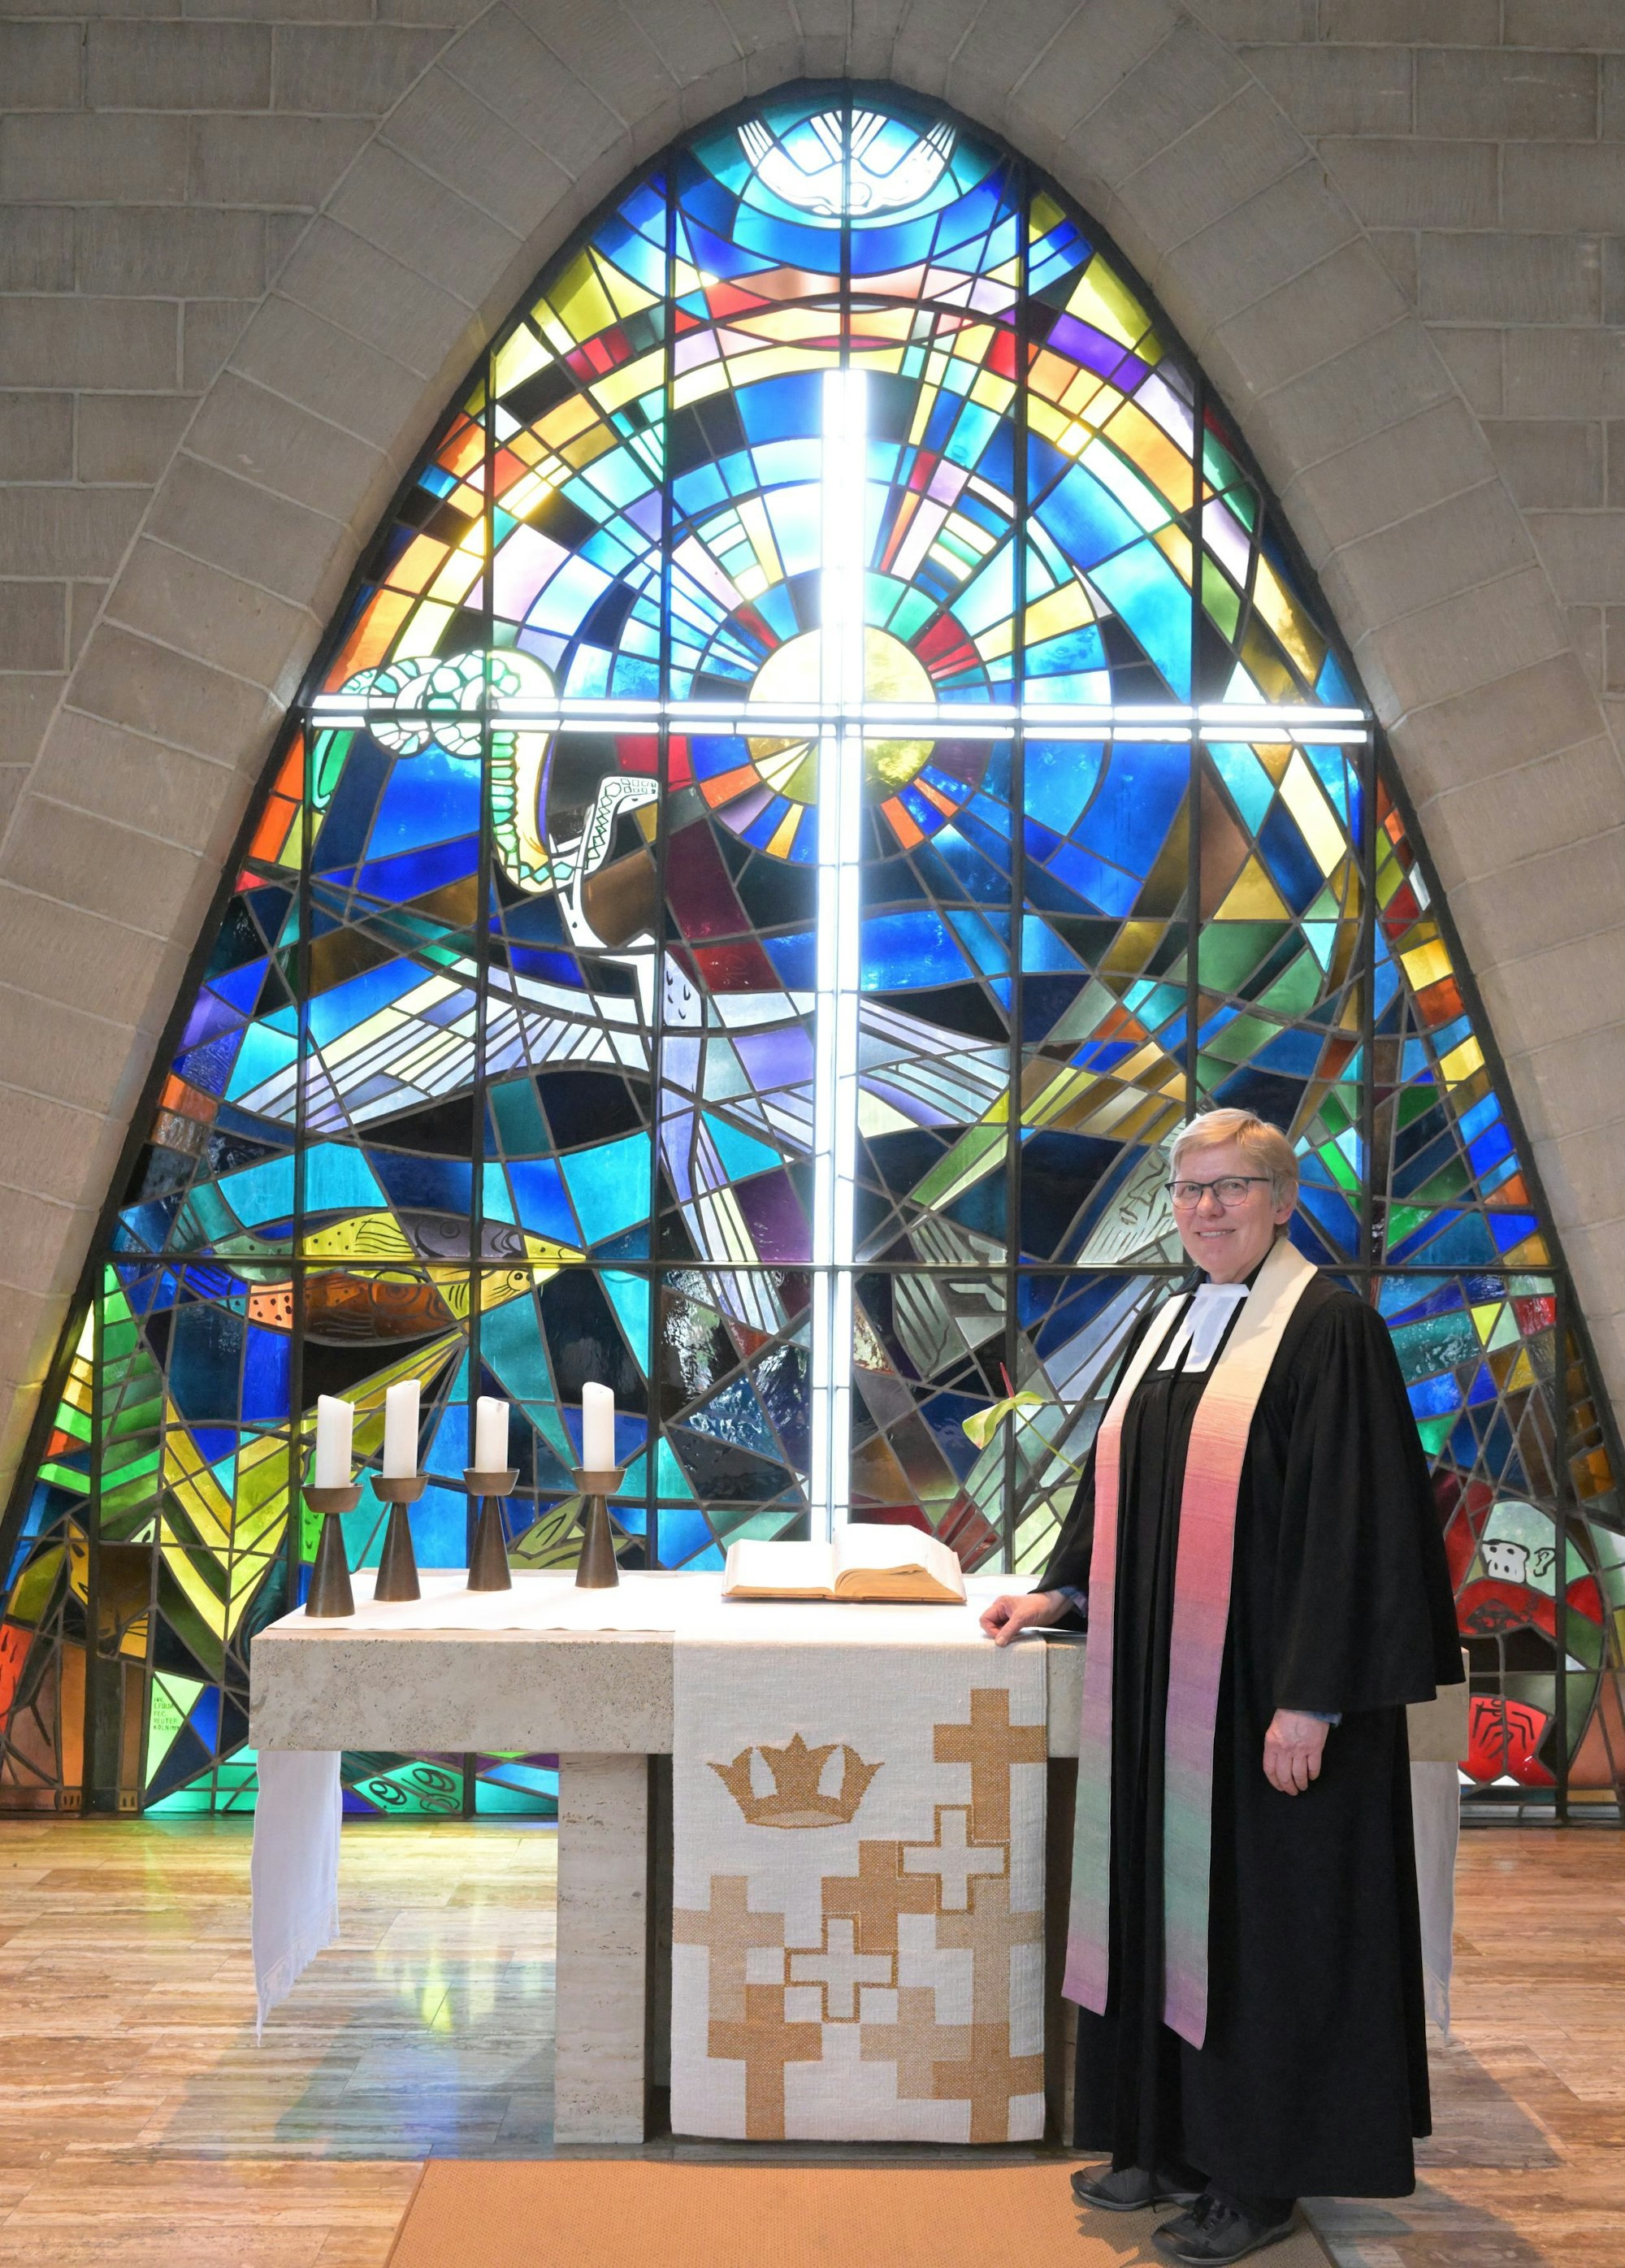 Das Parabelfenster der Christuskirche, an dem nicht nur die frühere Pfarrerin Erika Juckel hängt, soll erhalten bleiben. Es könnte wie eine Skulptur auf dem Gelände stehen.